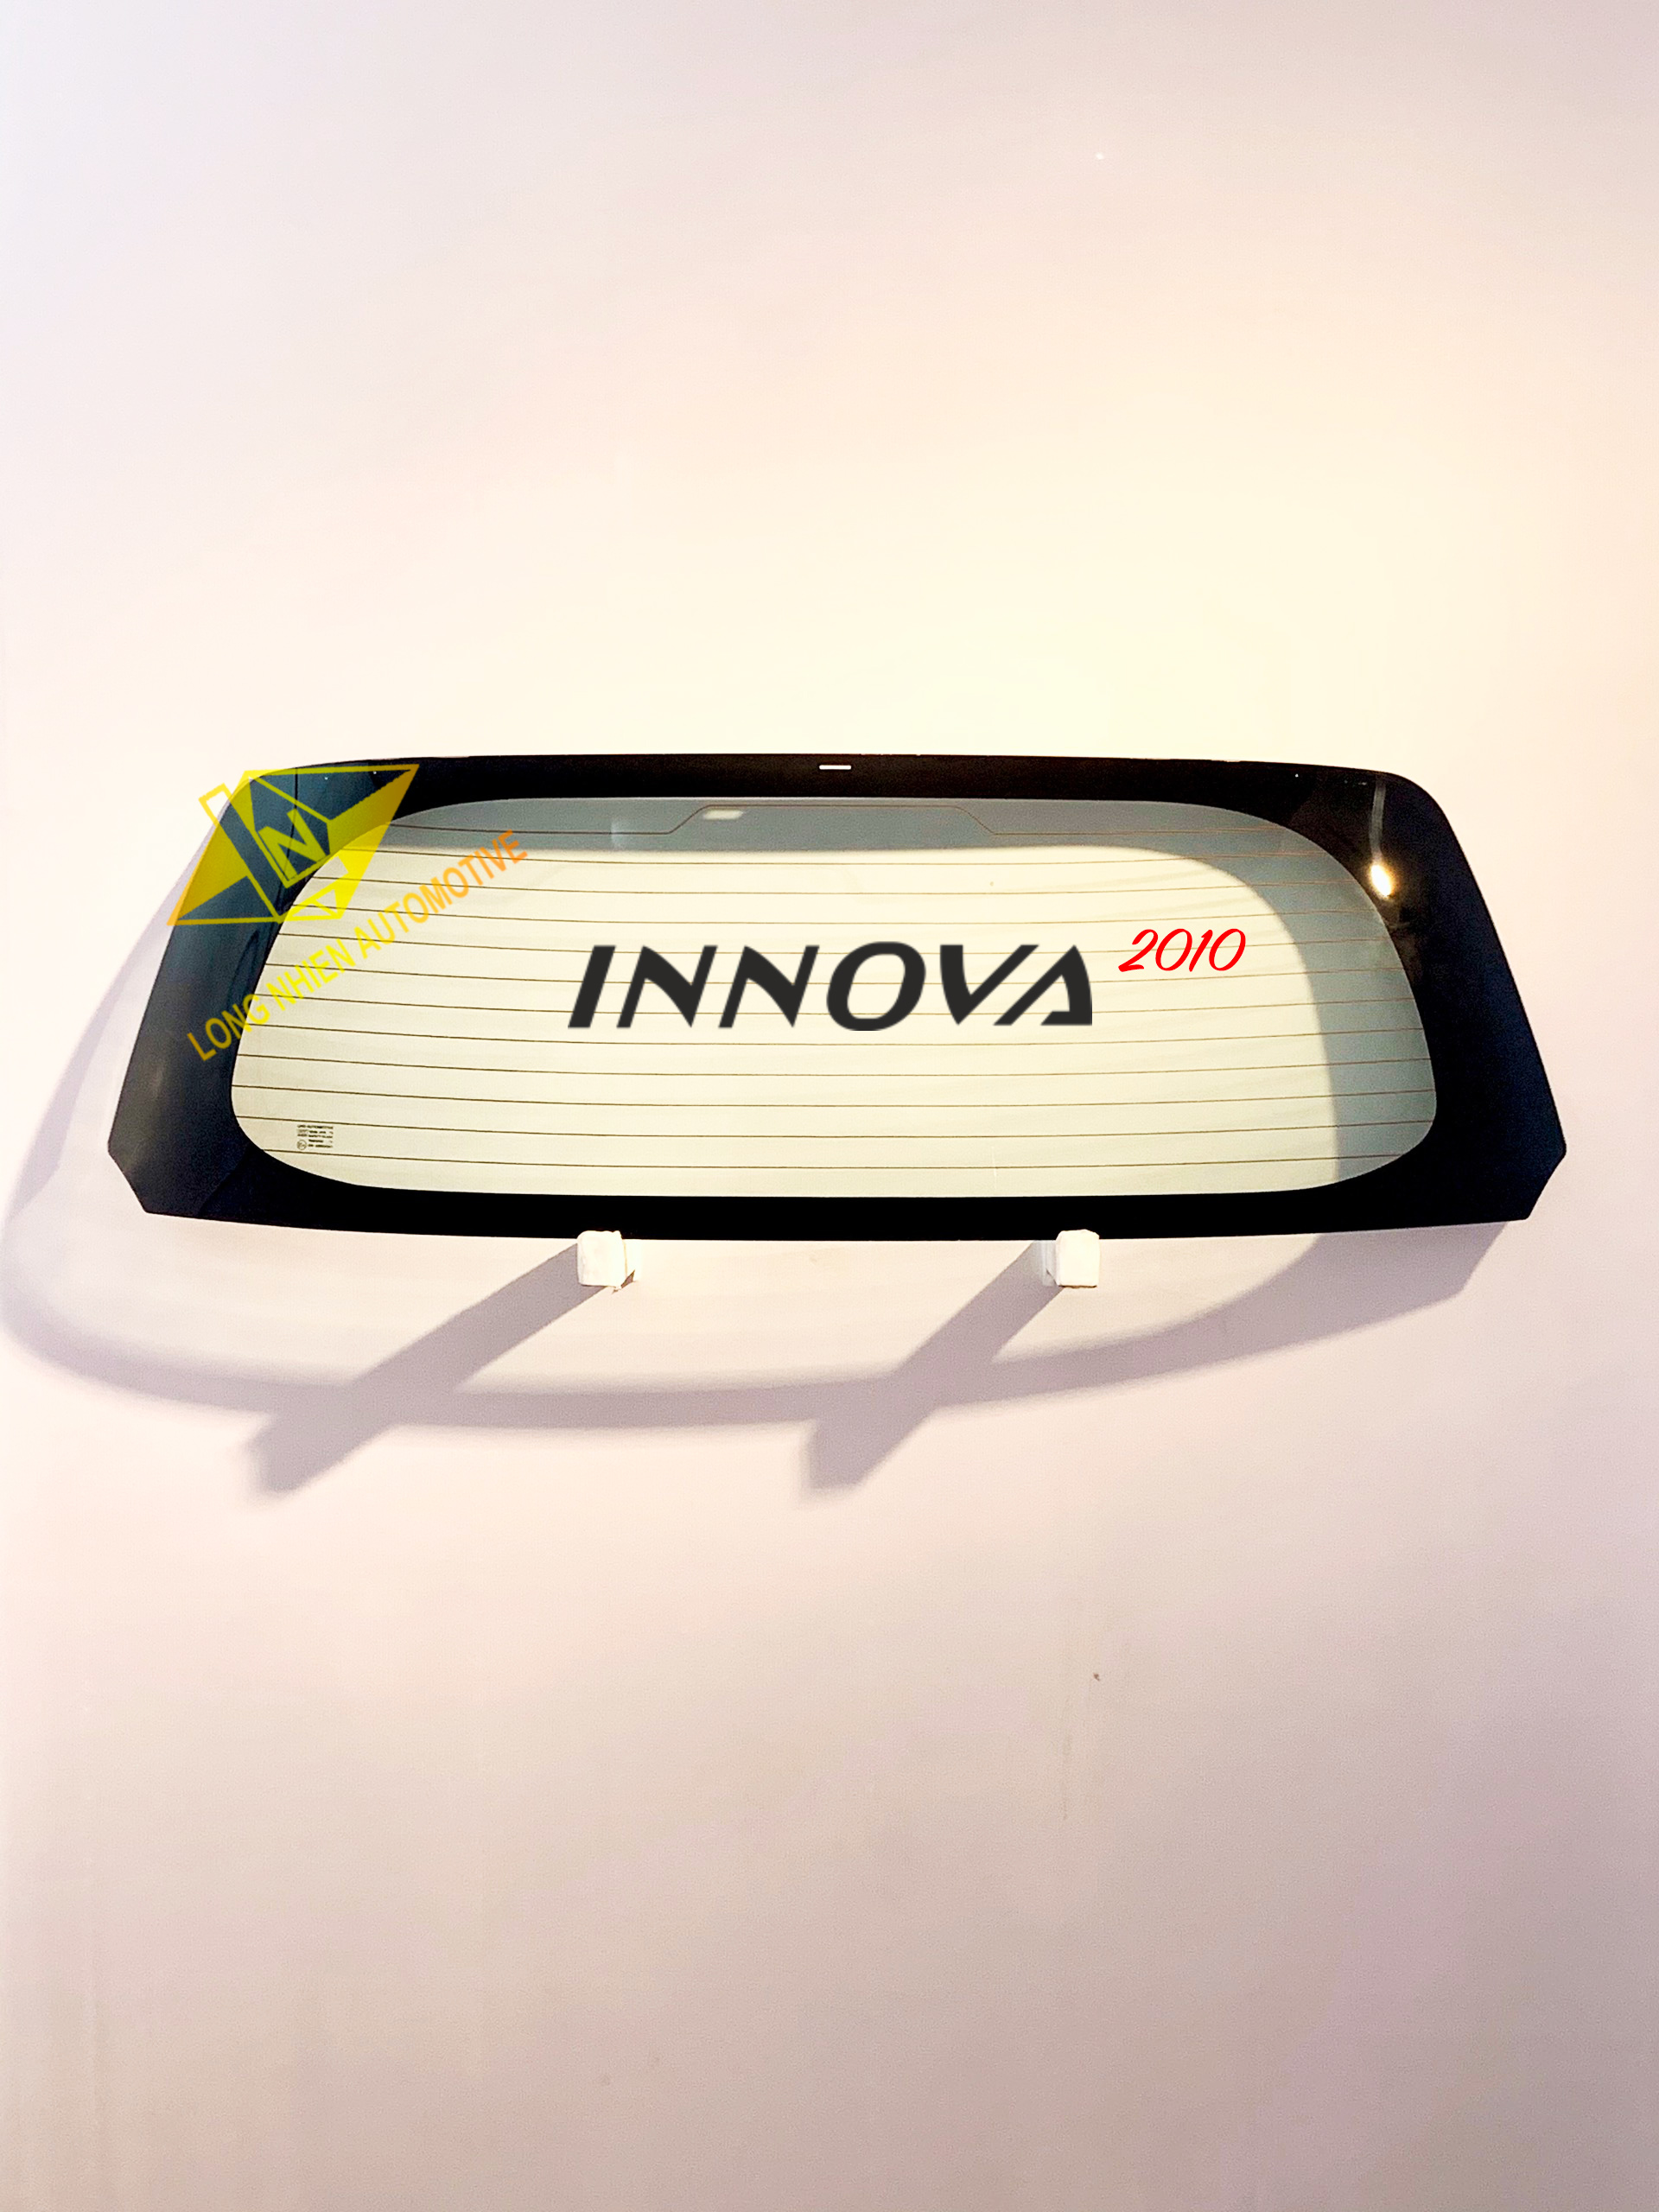 Toyota Innova 2010 Kính Lưng Song